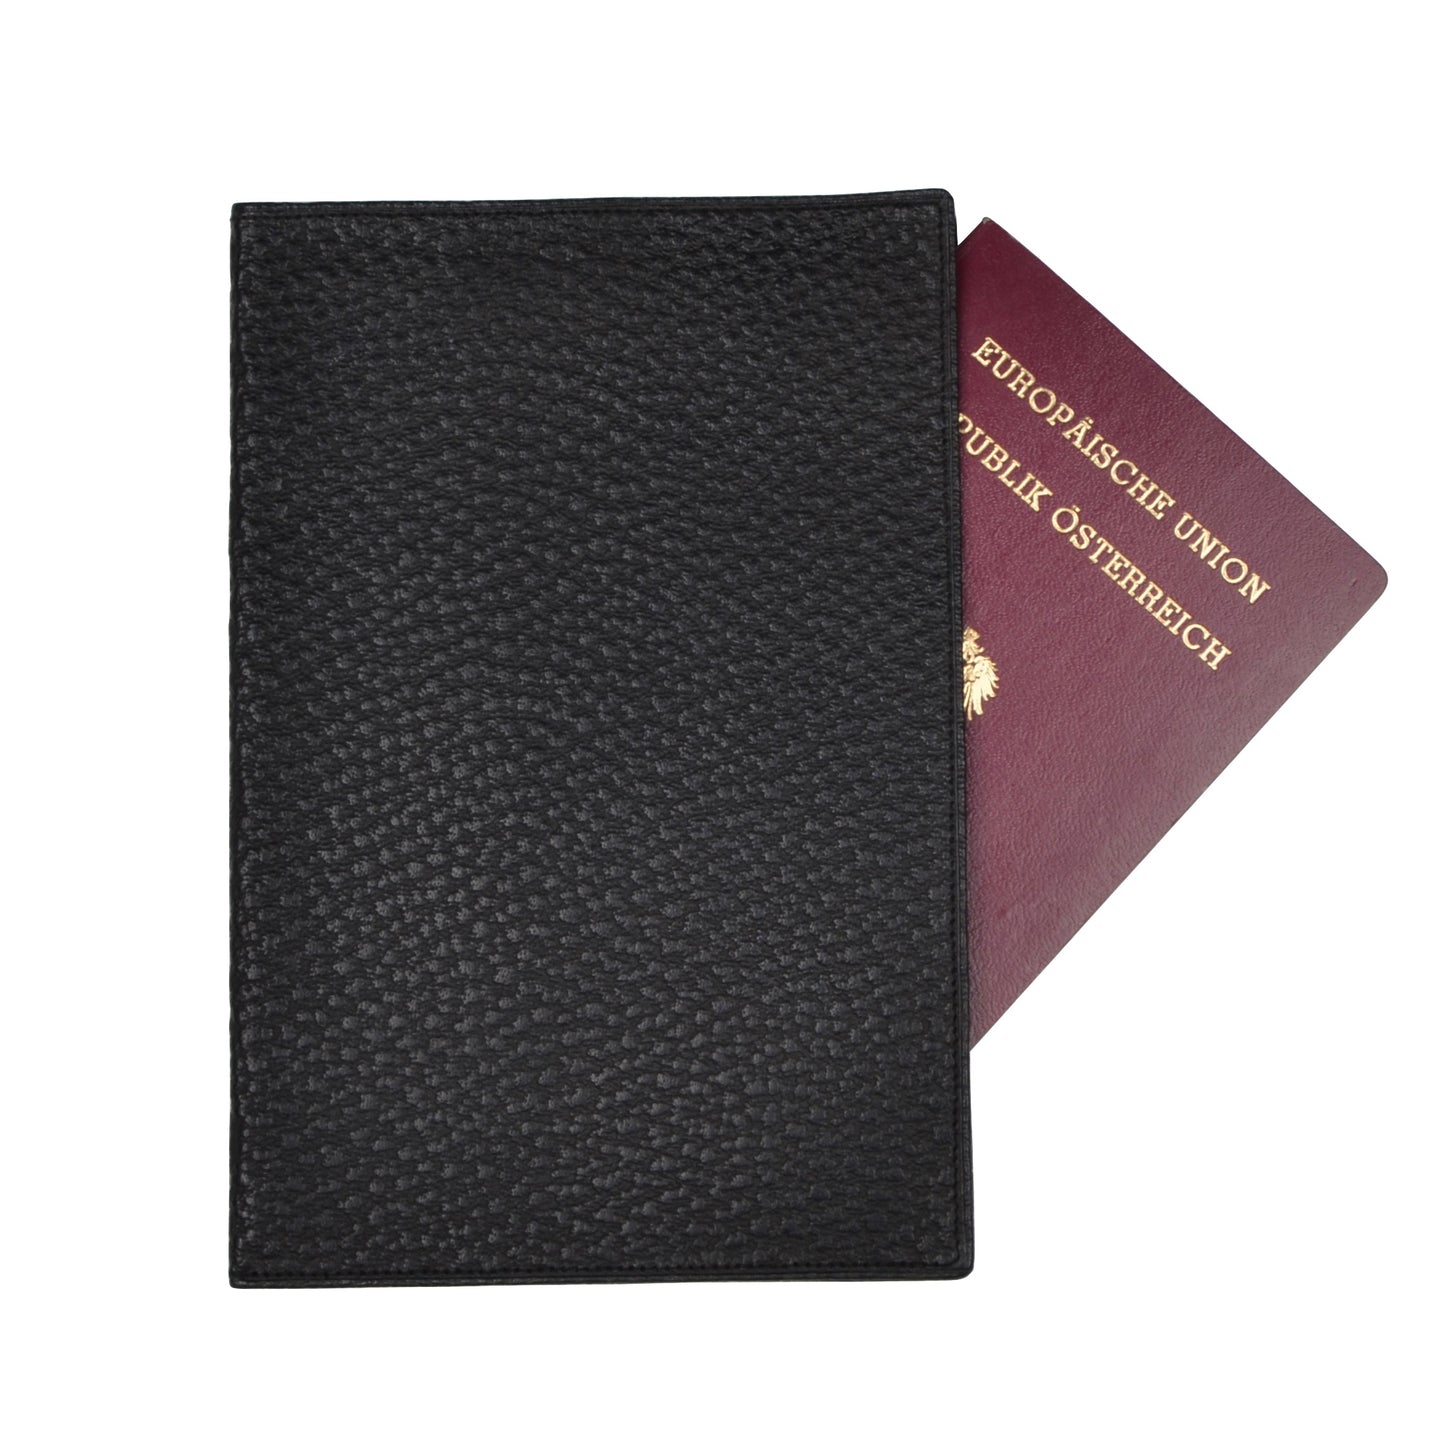 Pebble Grain Leather Passport Case/Wallet - Black